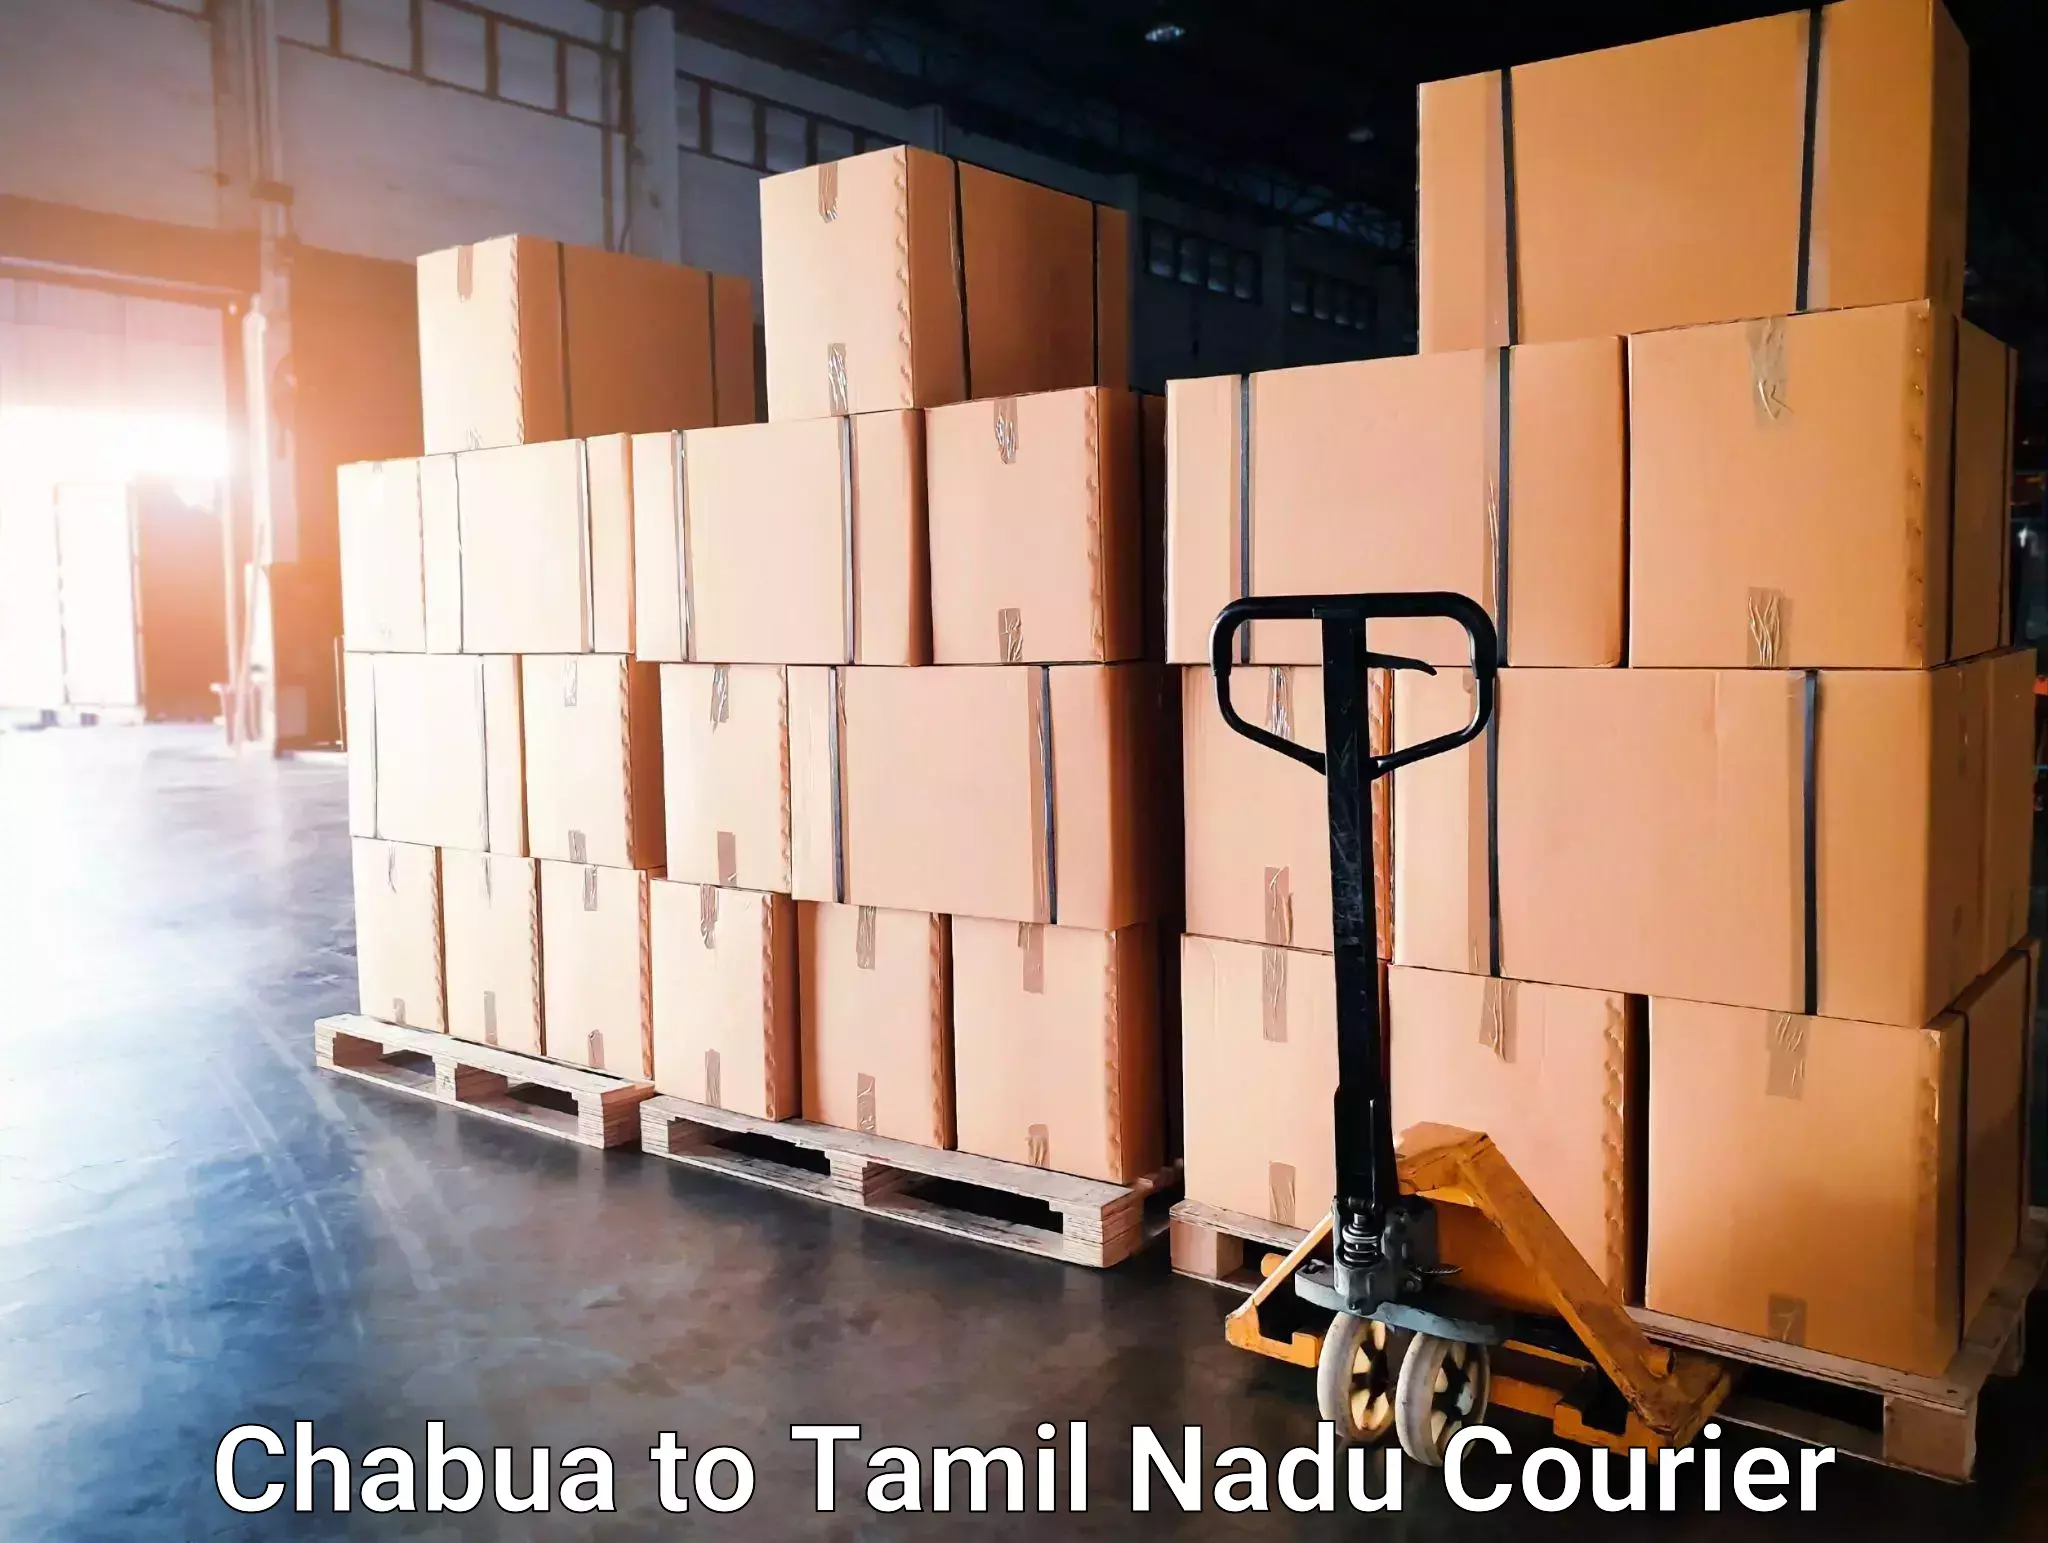 Courier service comparison Chabua to Tamil Nadu